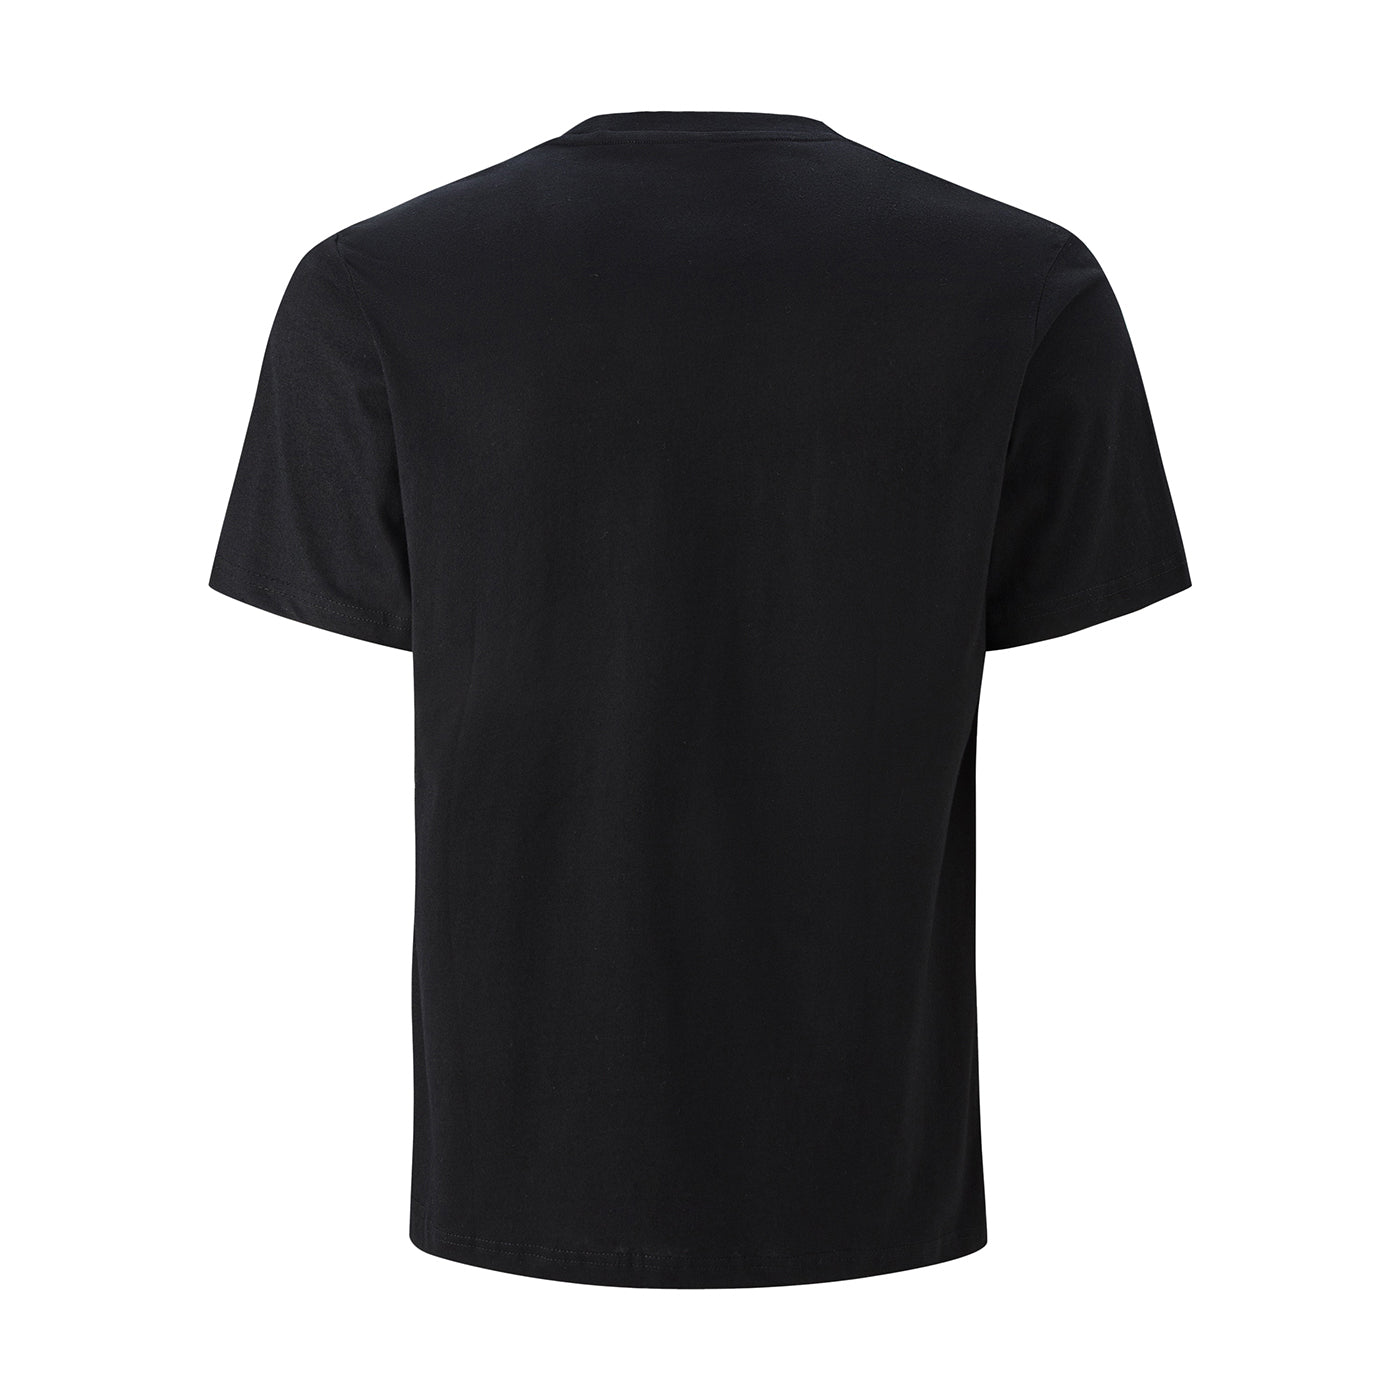 FRESHHOODS Black T-Shirt